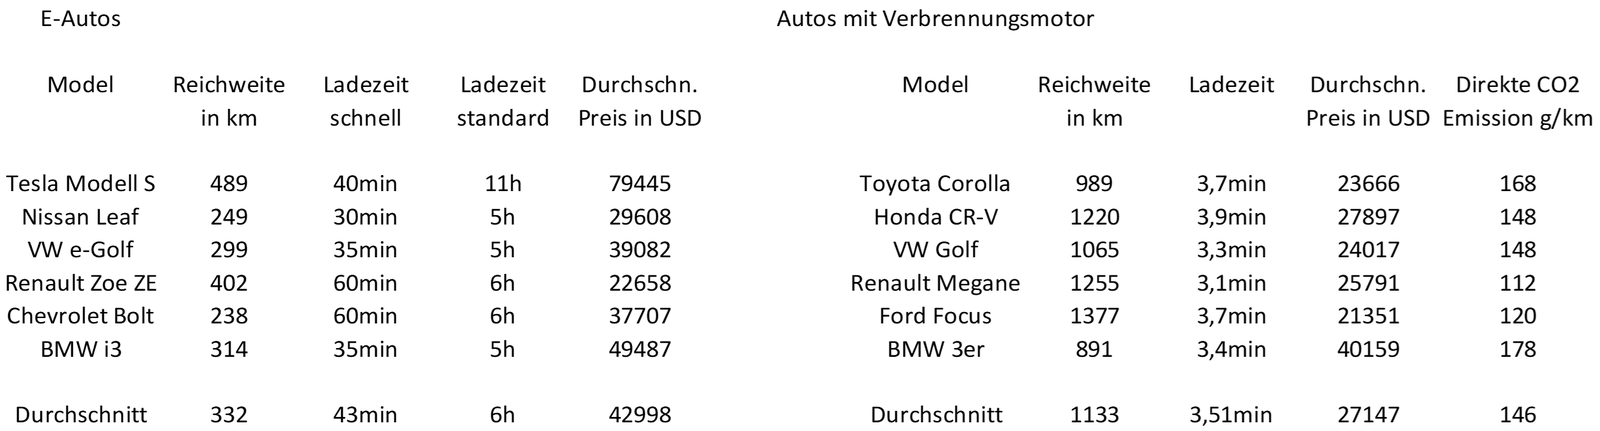 Aumann AG - eine ausführliche Unternehmensanalyse: Vergleich der Kosten für ein Auto mit Verbrennungsmotor und Elektromotor | LYNX Online Broker